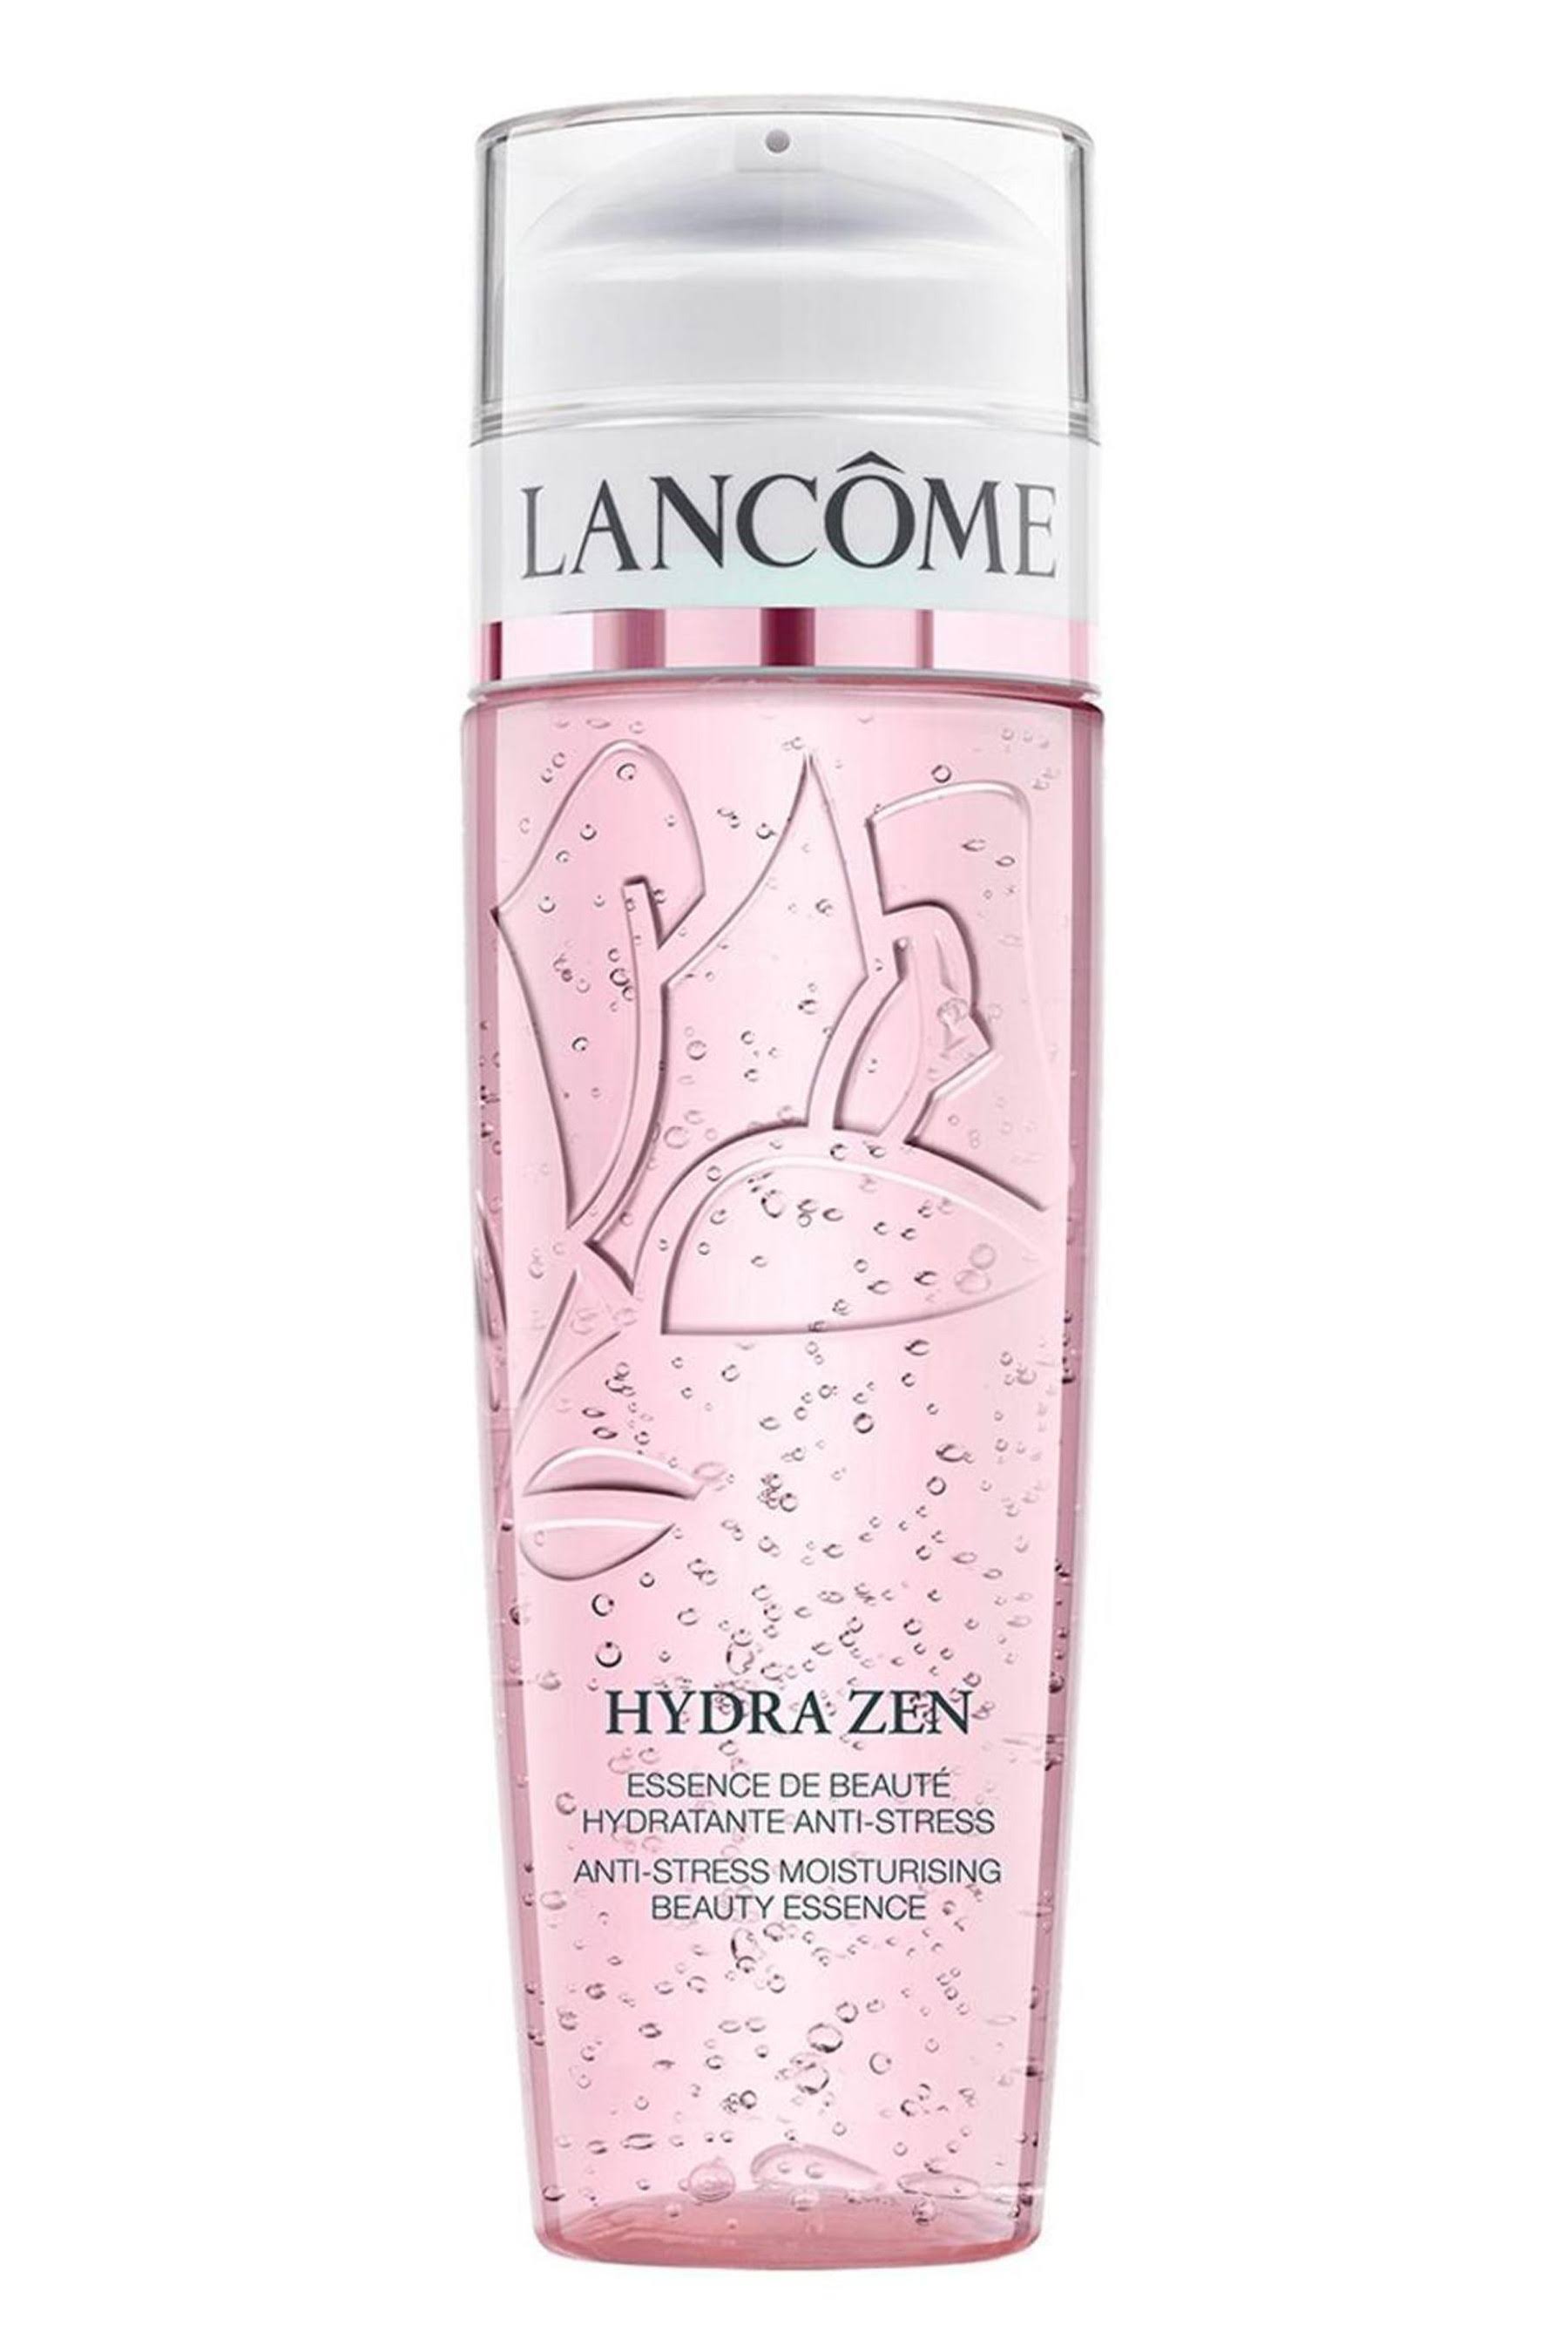 Lancome Hydra Zen Anti-Stress Moisurising Beauty Essence - 200ml